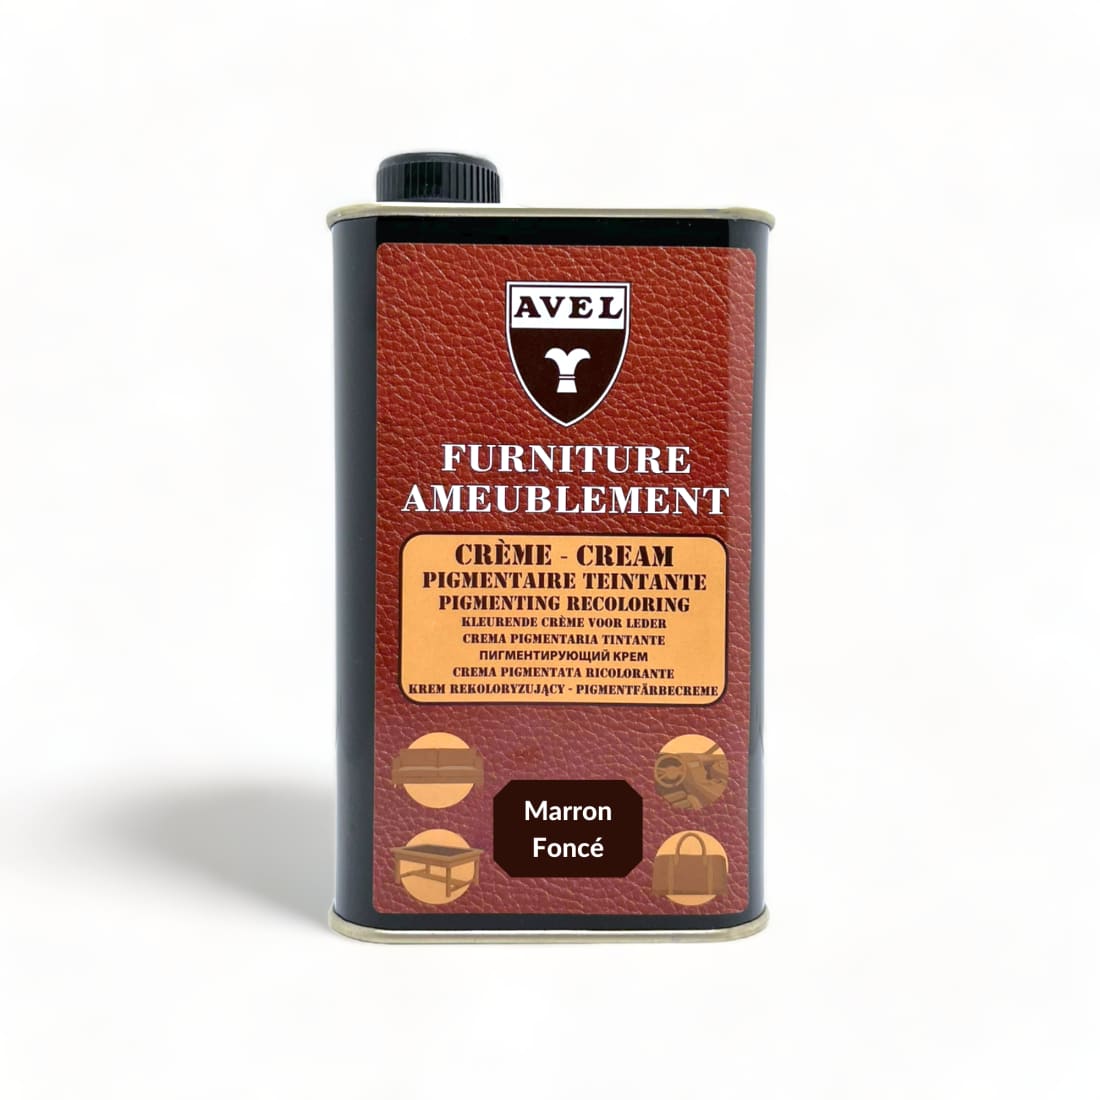 Crème Pigmentaire Teintante Marron Foncé - Avel - 375 ml -